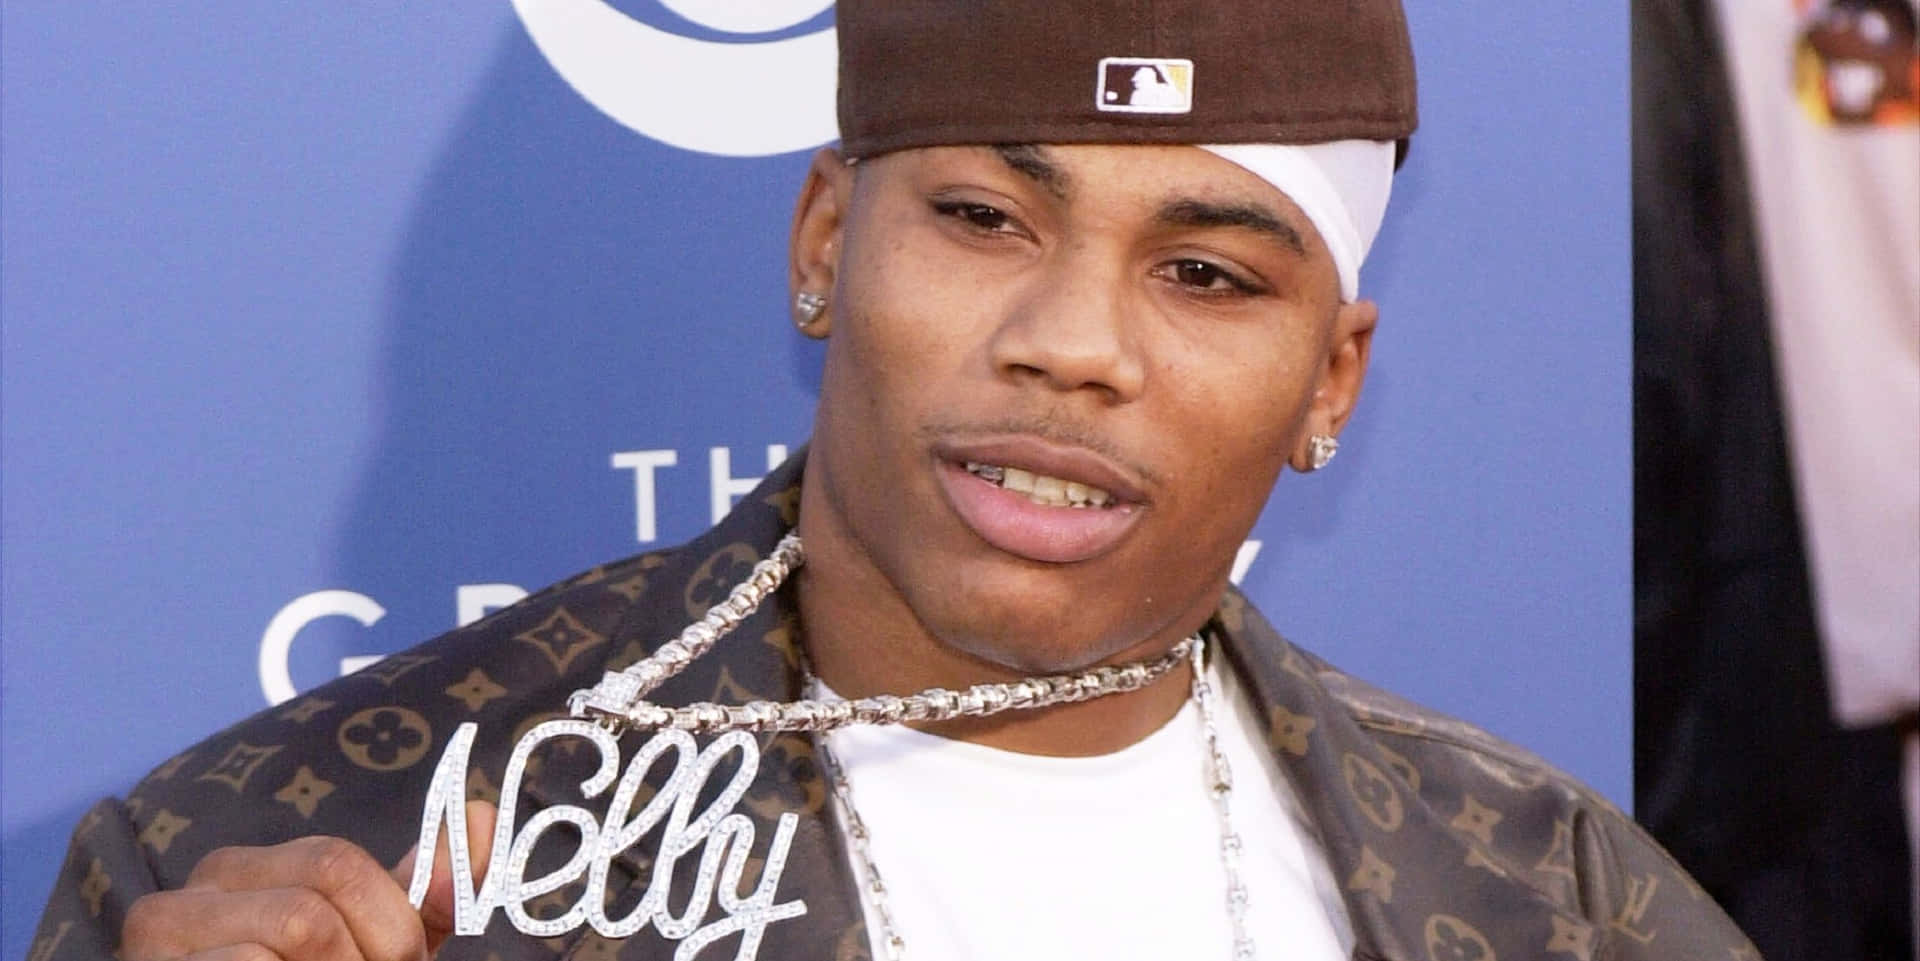 Nellyunder Grammys Award 2003. Wallpaper